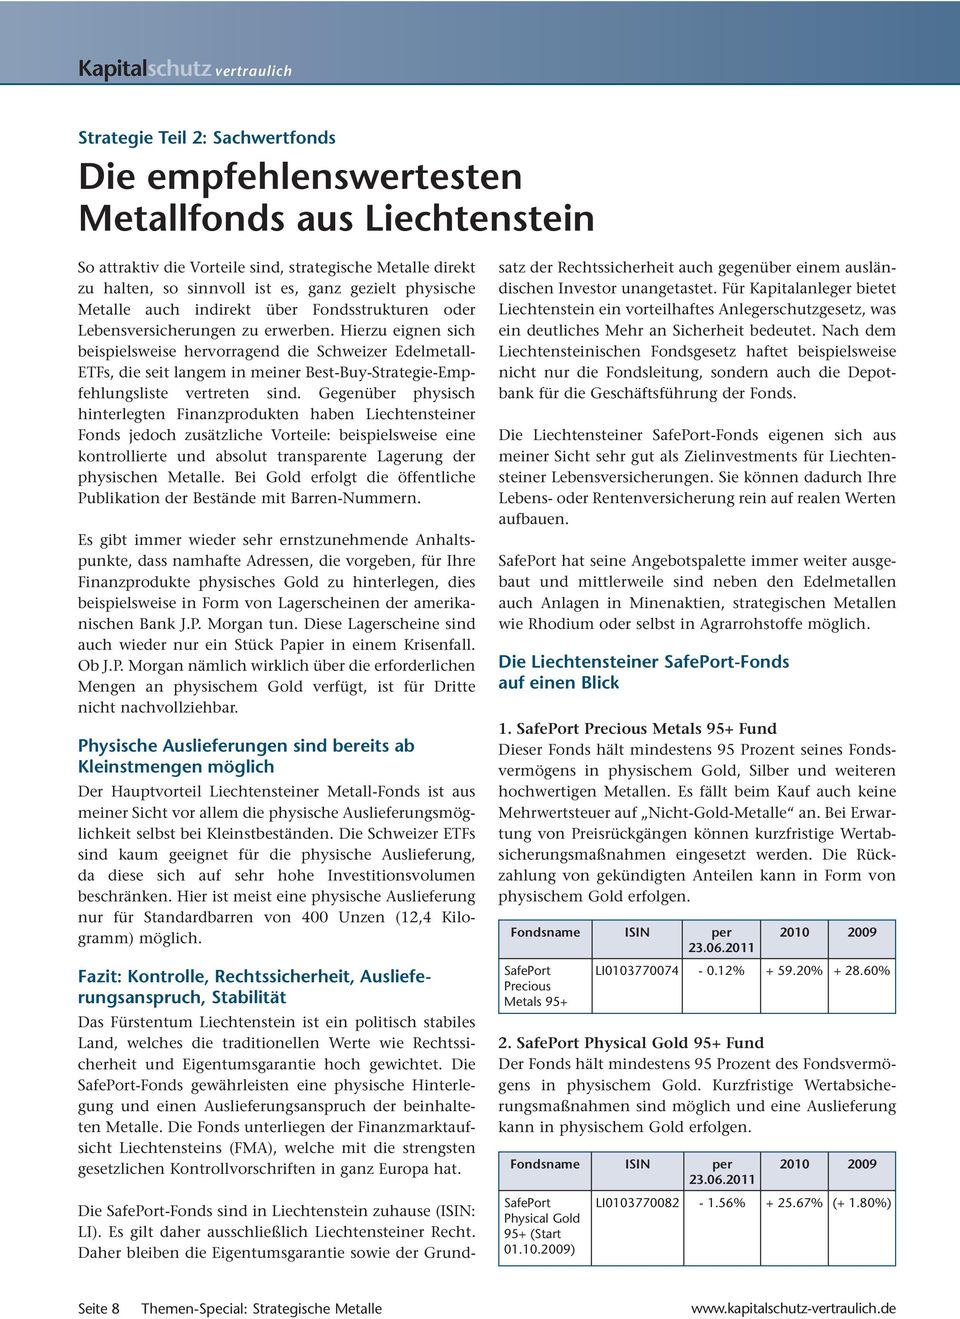 Hierzu eignen sich beispielsweise hervorragend die Schweizer Edelmetall- ETFs, die seit langem in meiner Best-Buy-Strategie-Empfehlungsliste vertreten sind.